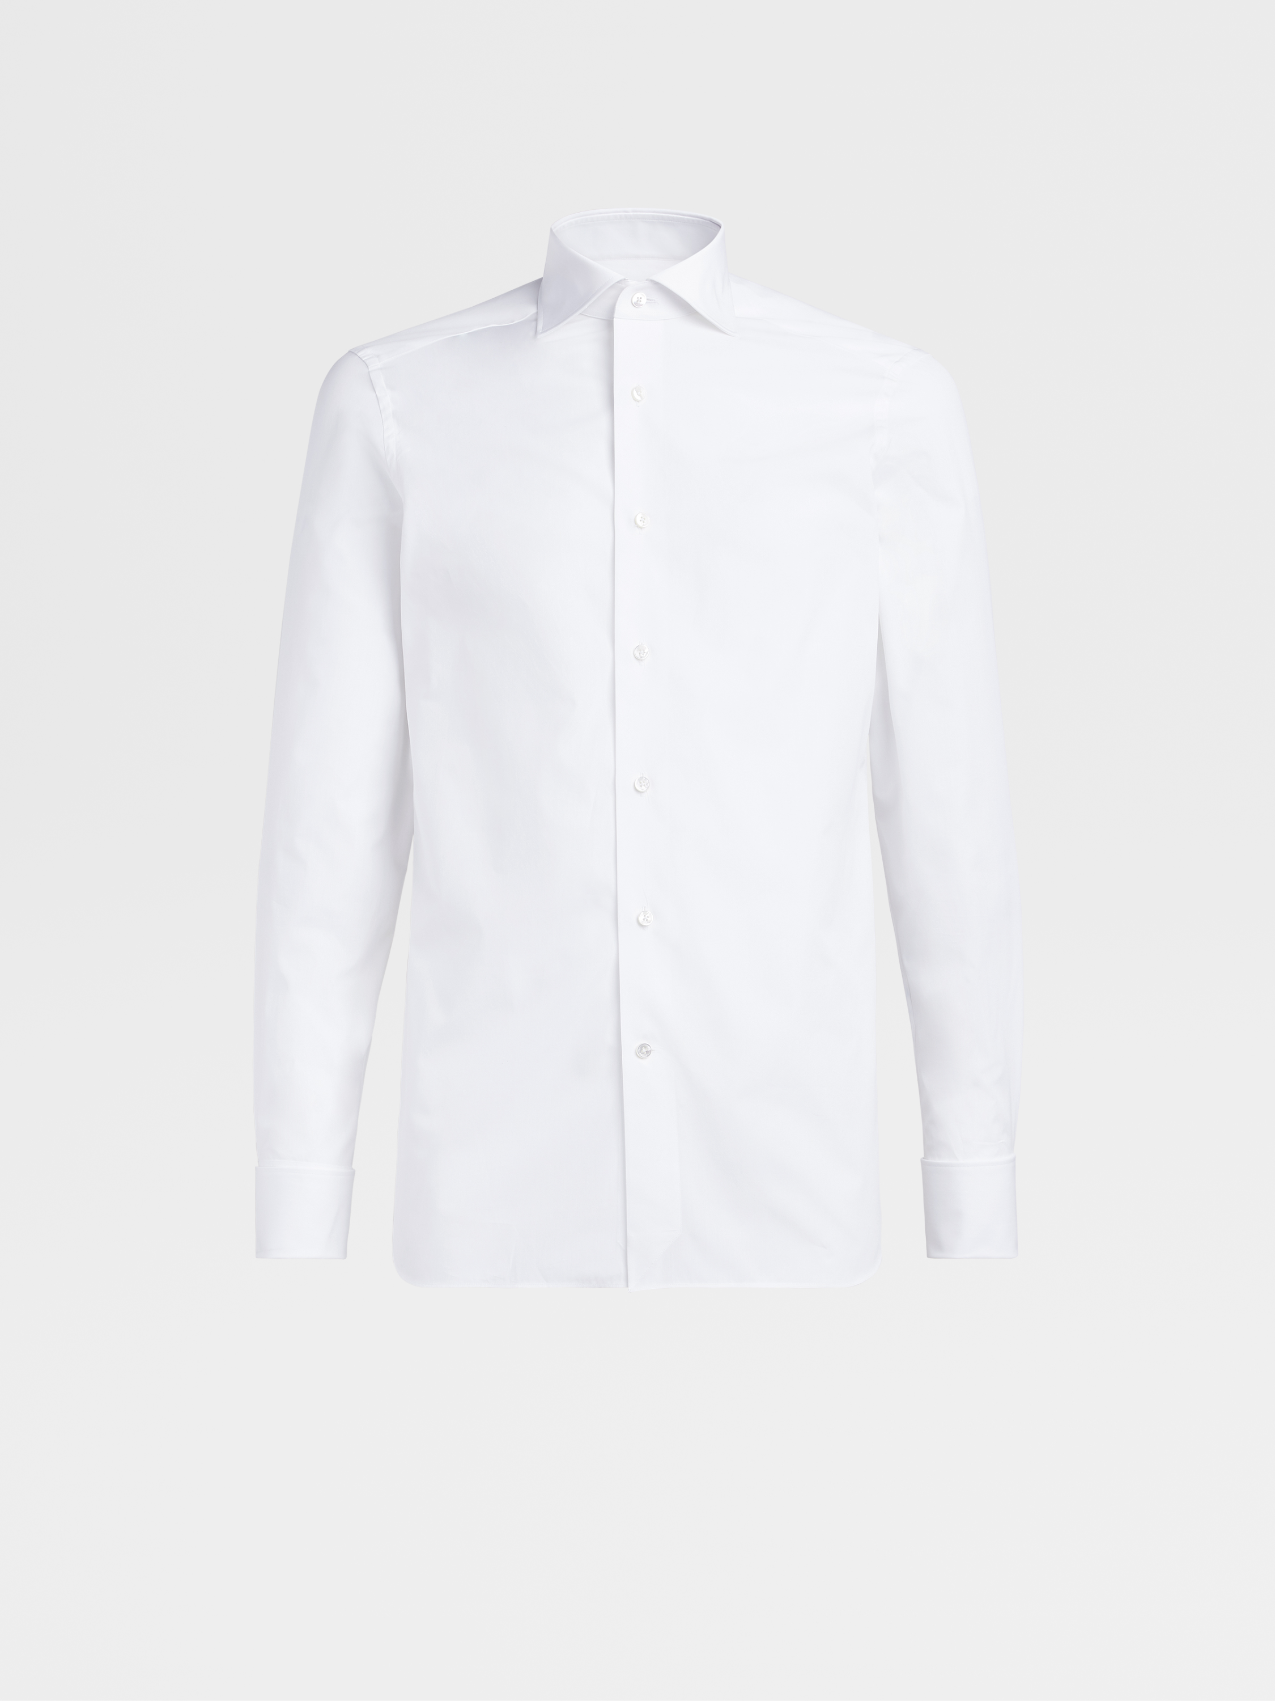 White Cotton Poplin Tailoring Shirt, Milano Regular Fit